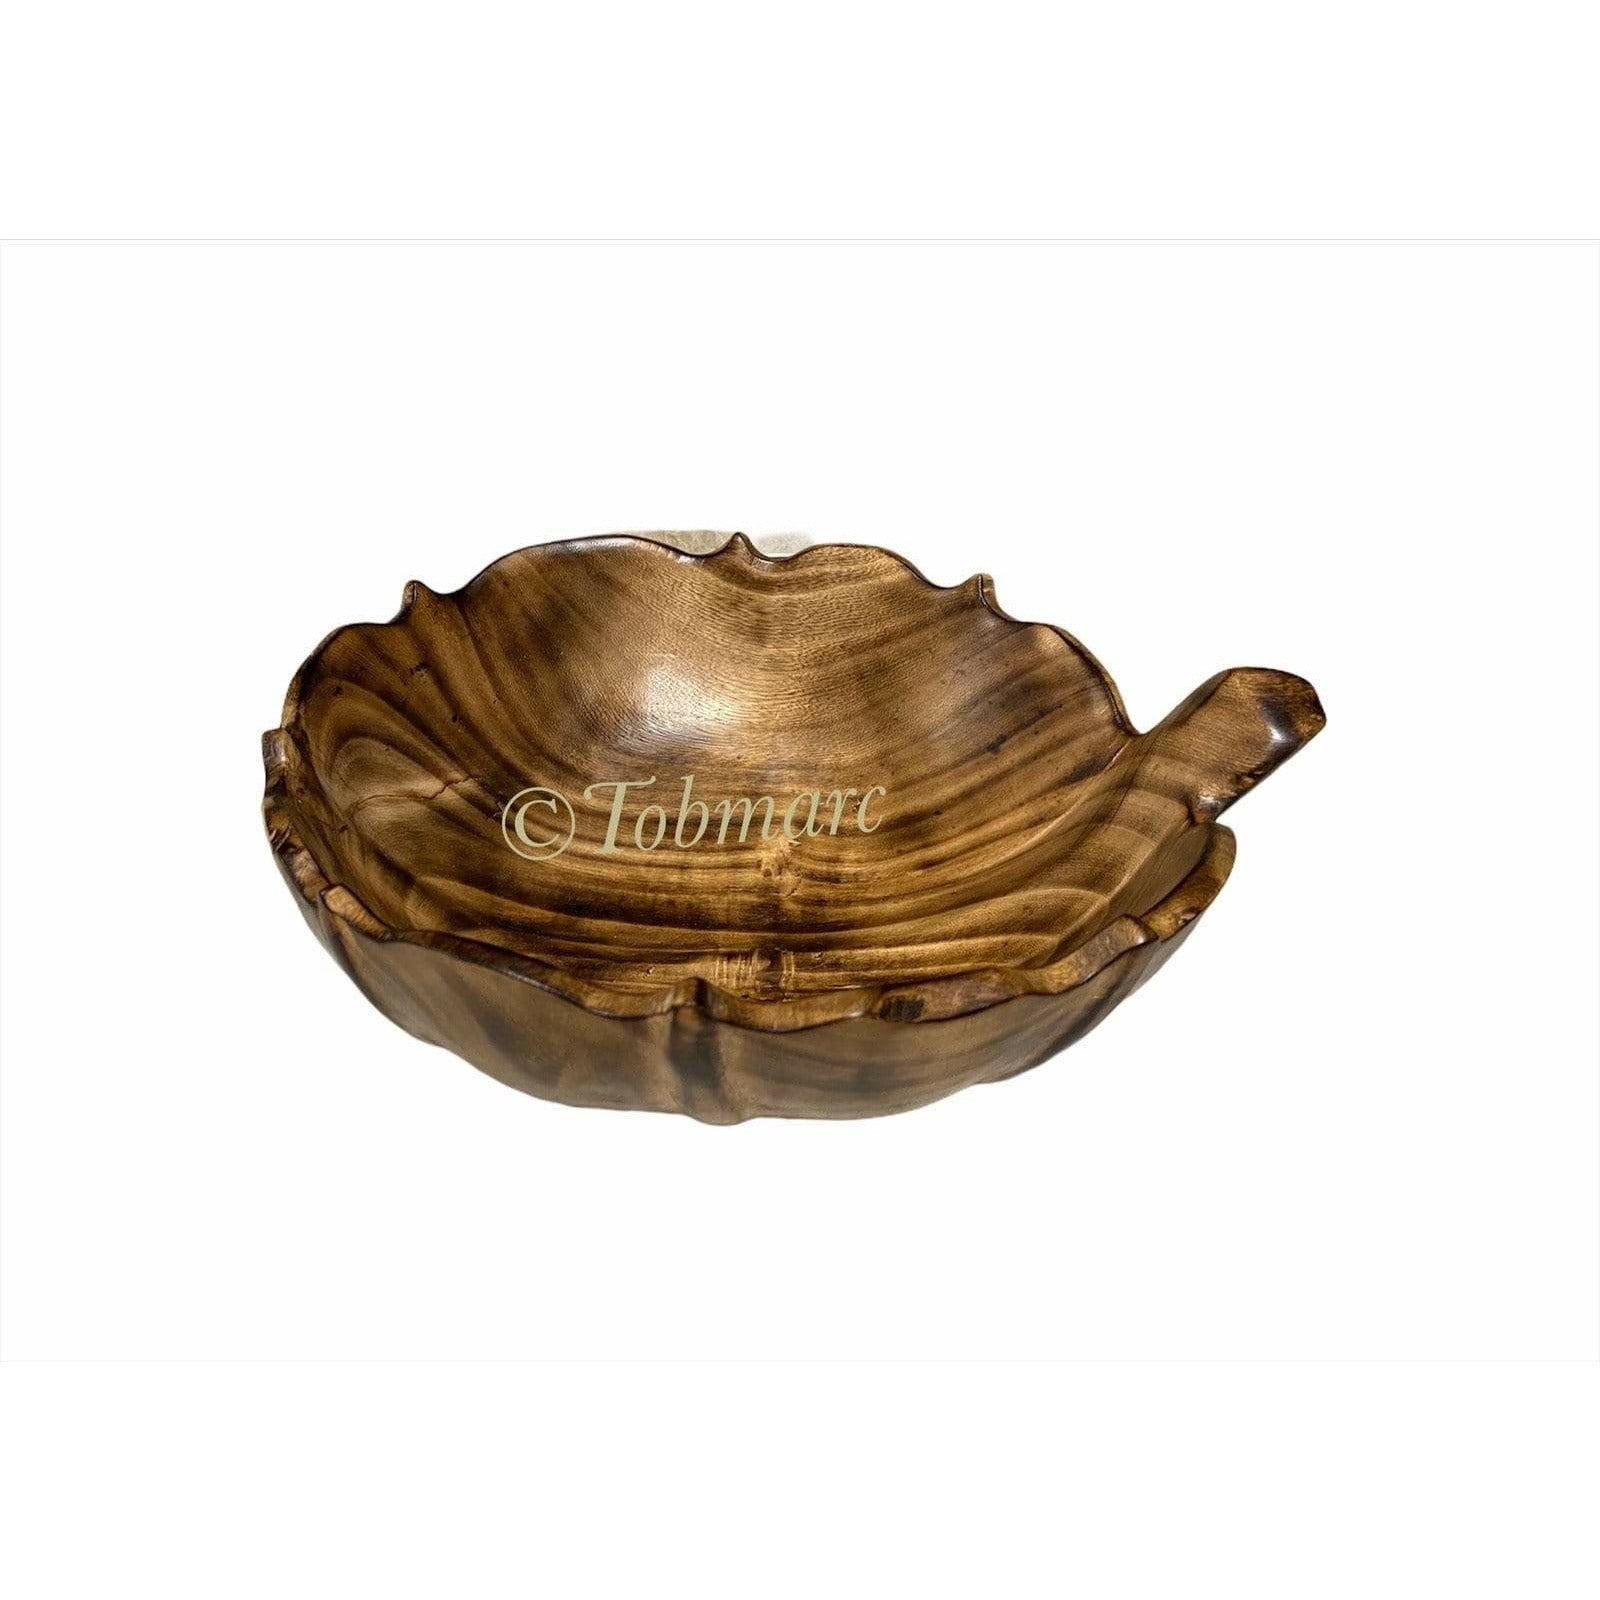 Tobmarc Home Decor & Gifts  Leaf Jacaranda Salad Bowl, Hand carved Bowl, Wooden Bowl, Special gift